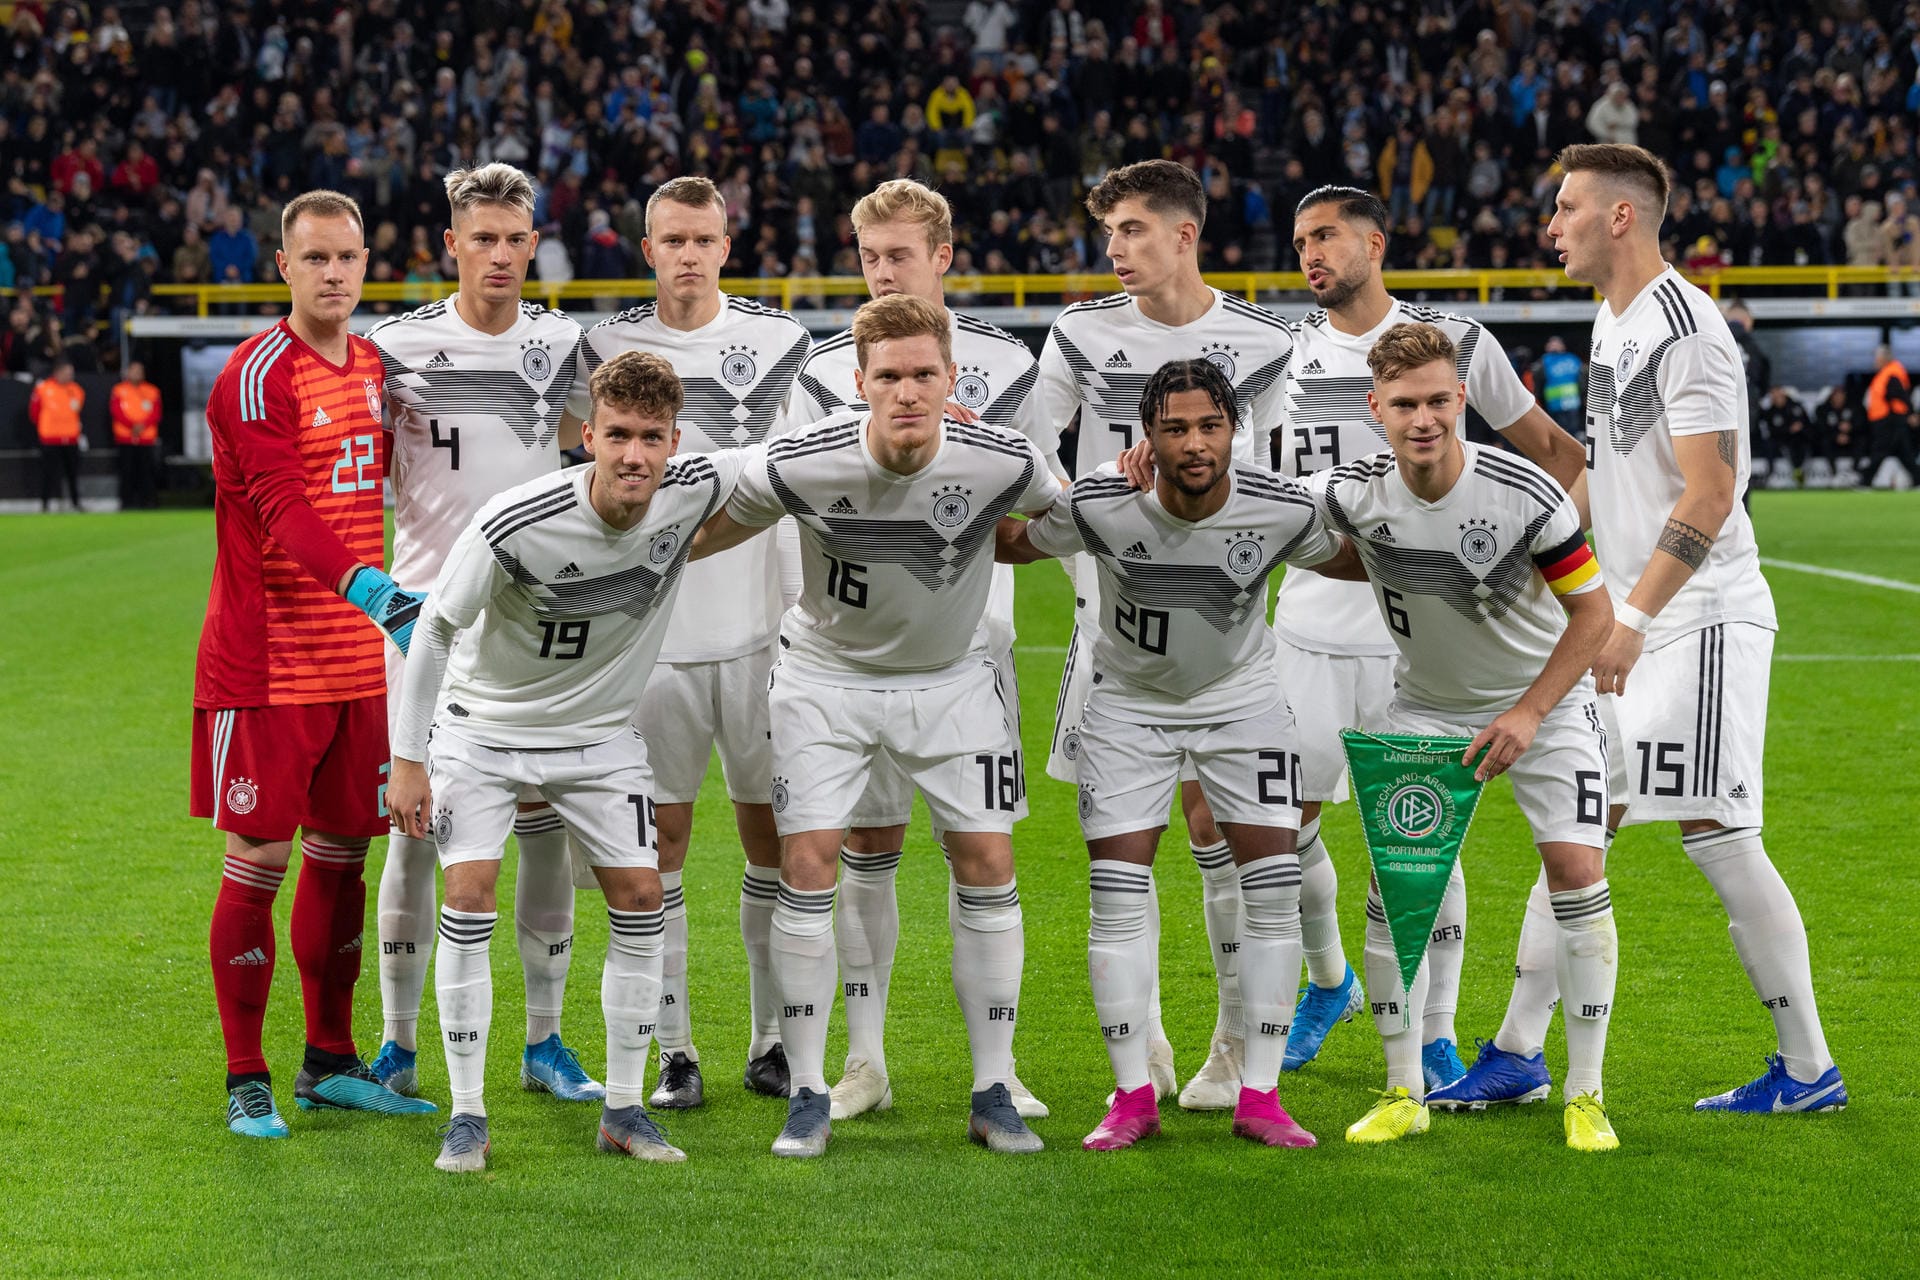 Die deutsche Nationalmannschaft kam am Mittwoch nicht über ein 2:2 gegen Argentinien hinaus. t-online.de hat die DFB-Spieler einzeln bewertet.